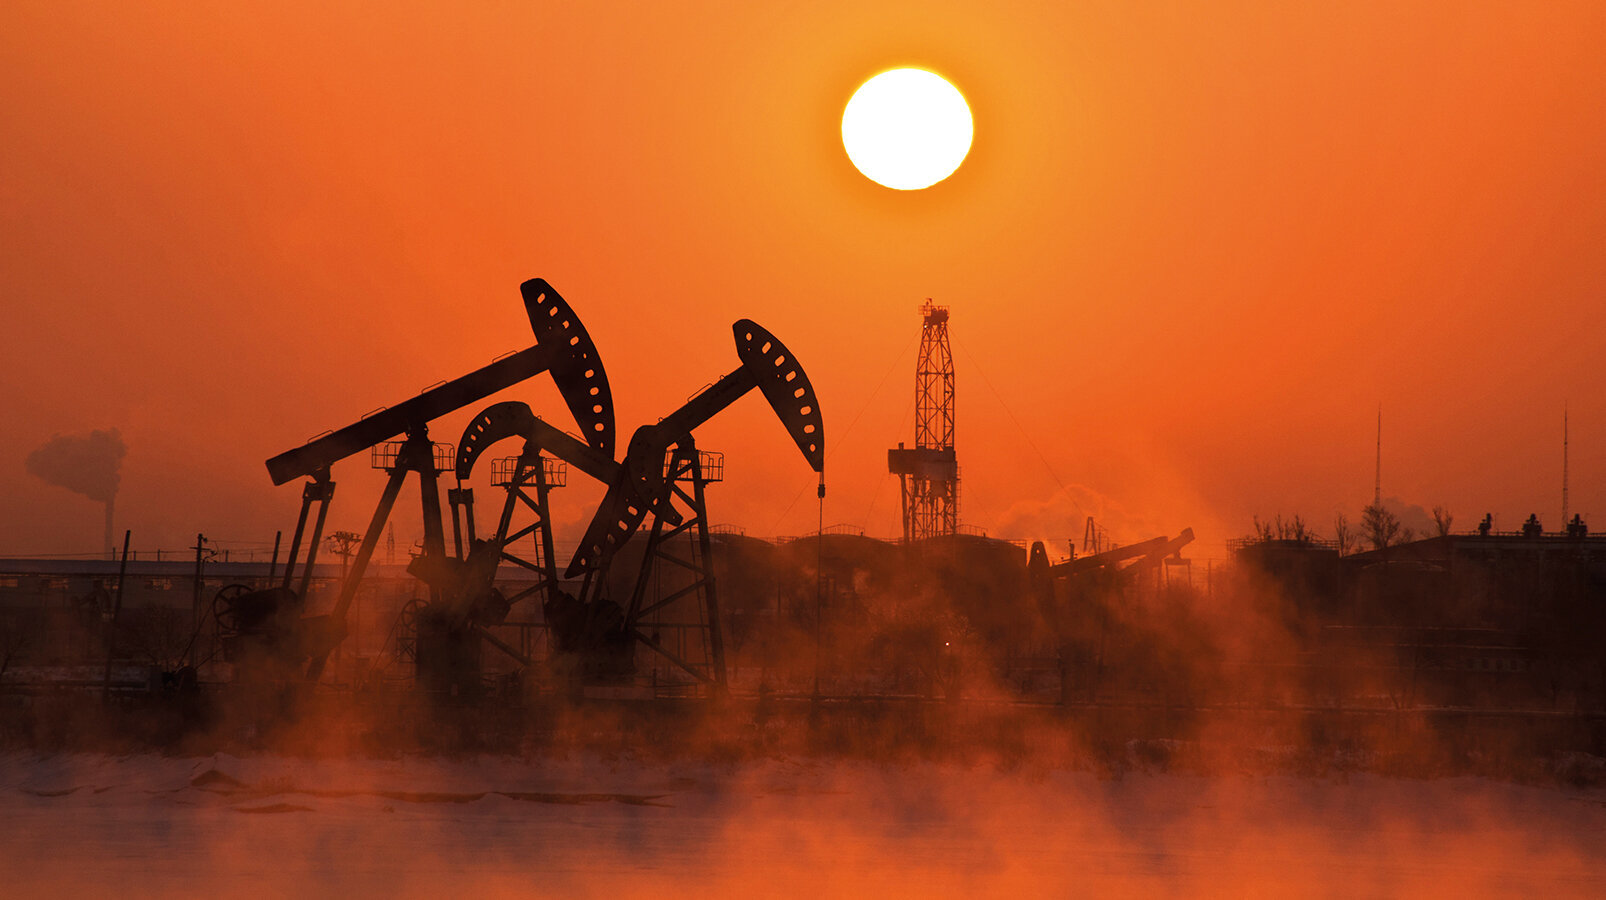 OPEC grubu petrol üretimini azaltma kararı aldı